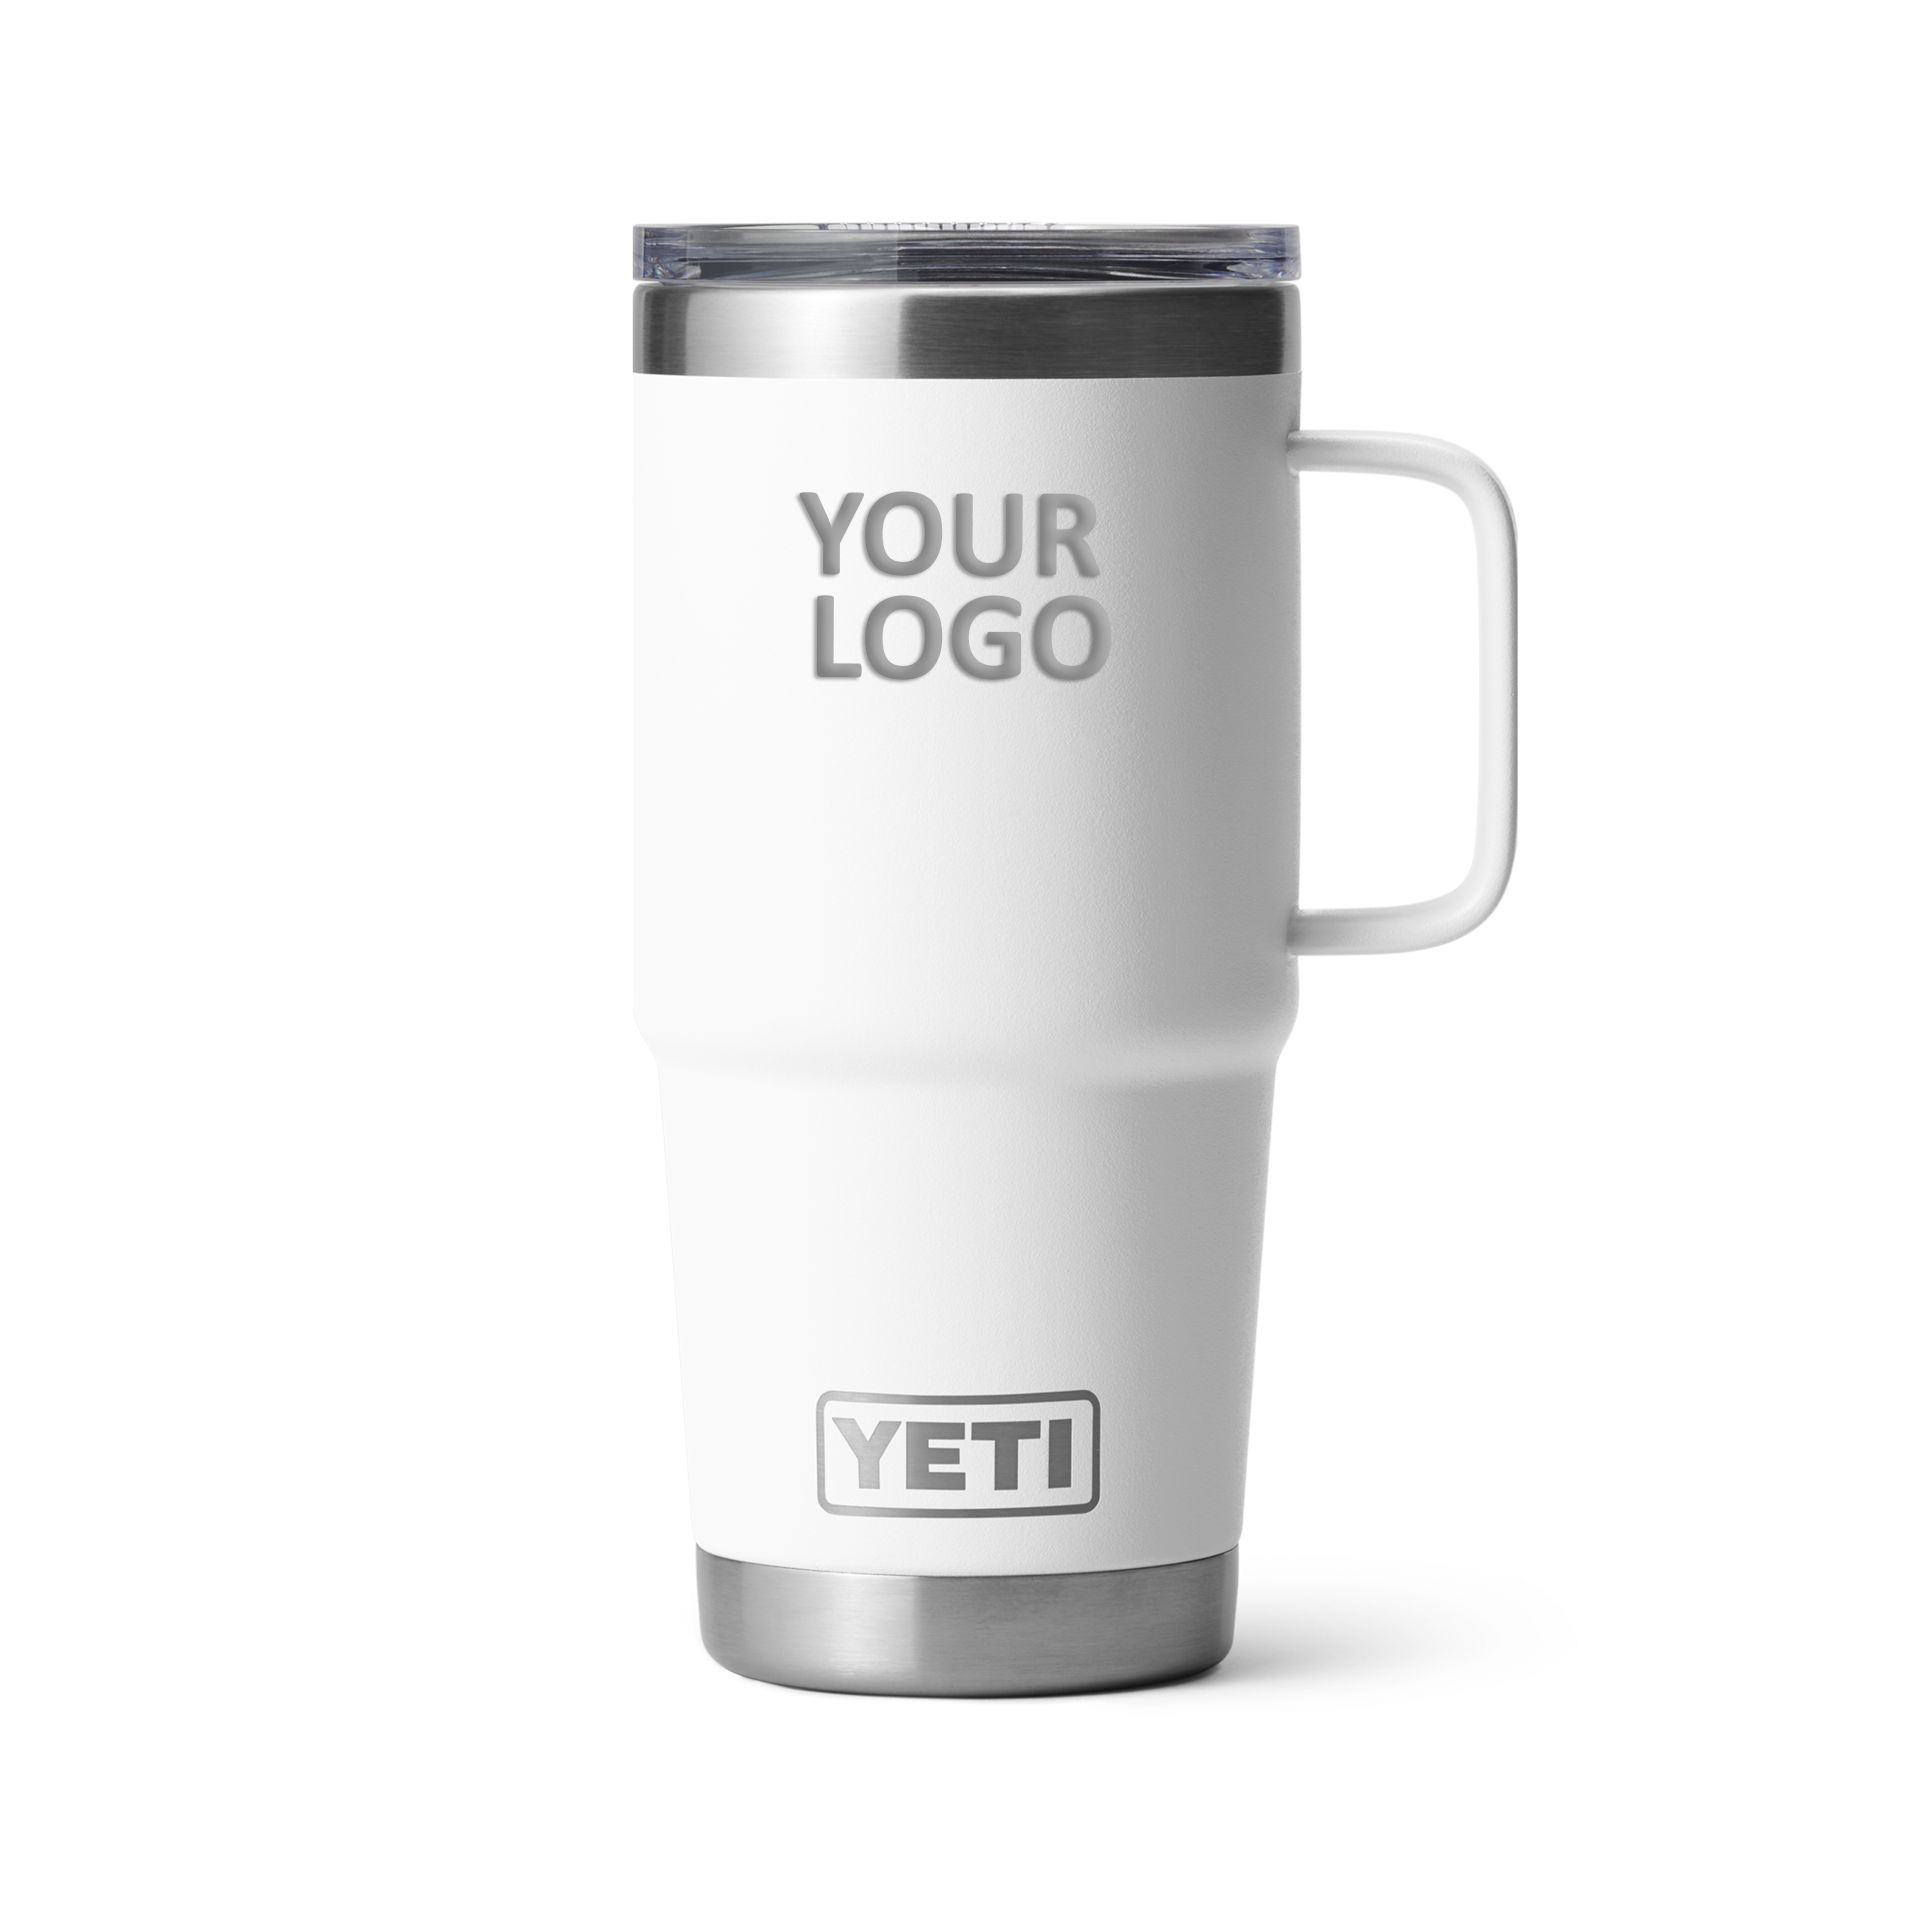 YETI Custom 20 oz Travel Mugs with Stronghold Lid, White